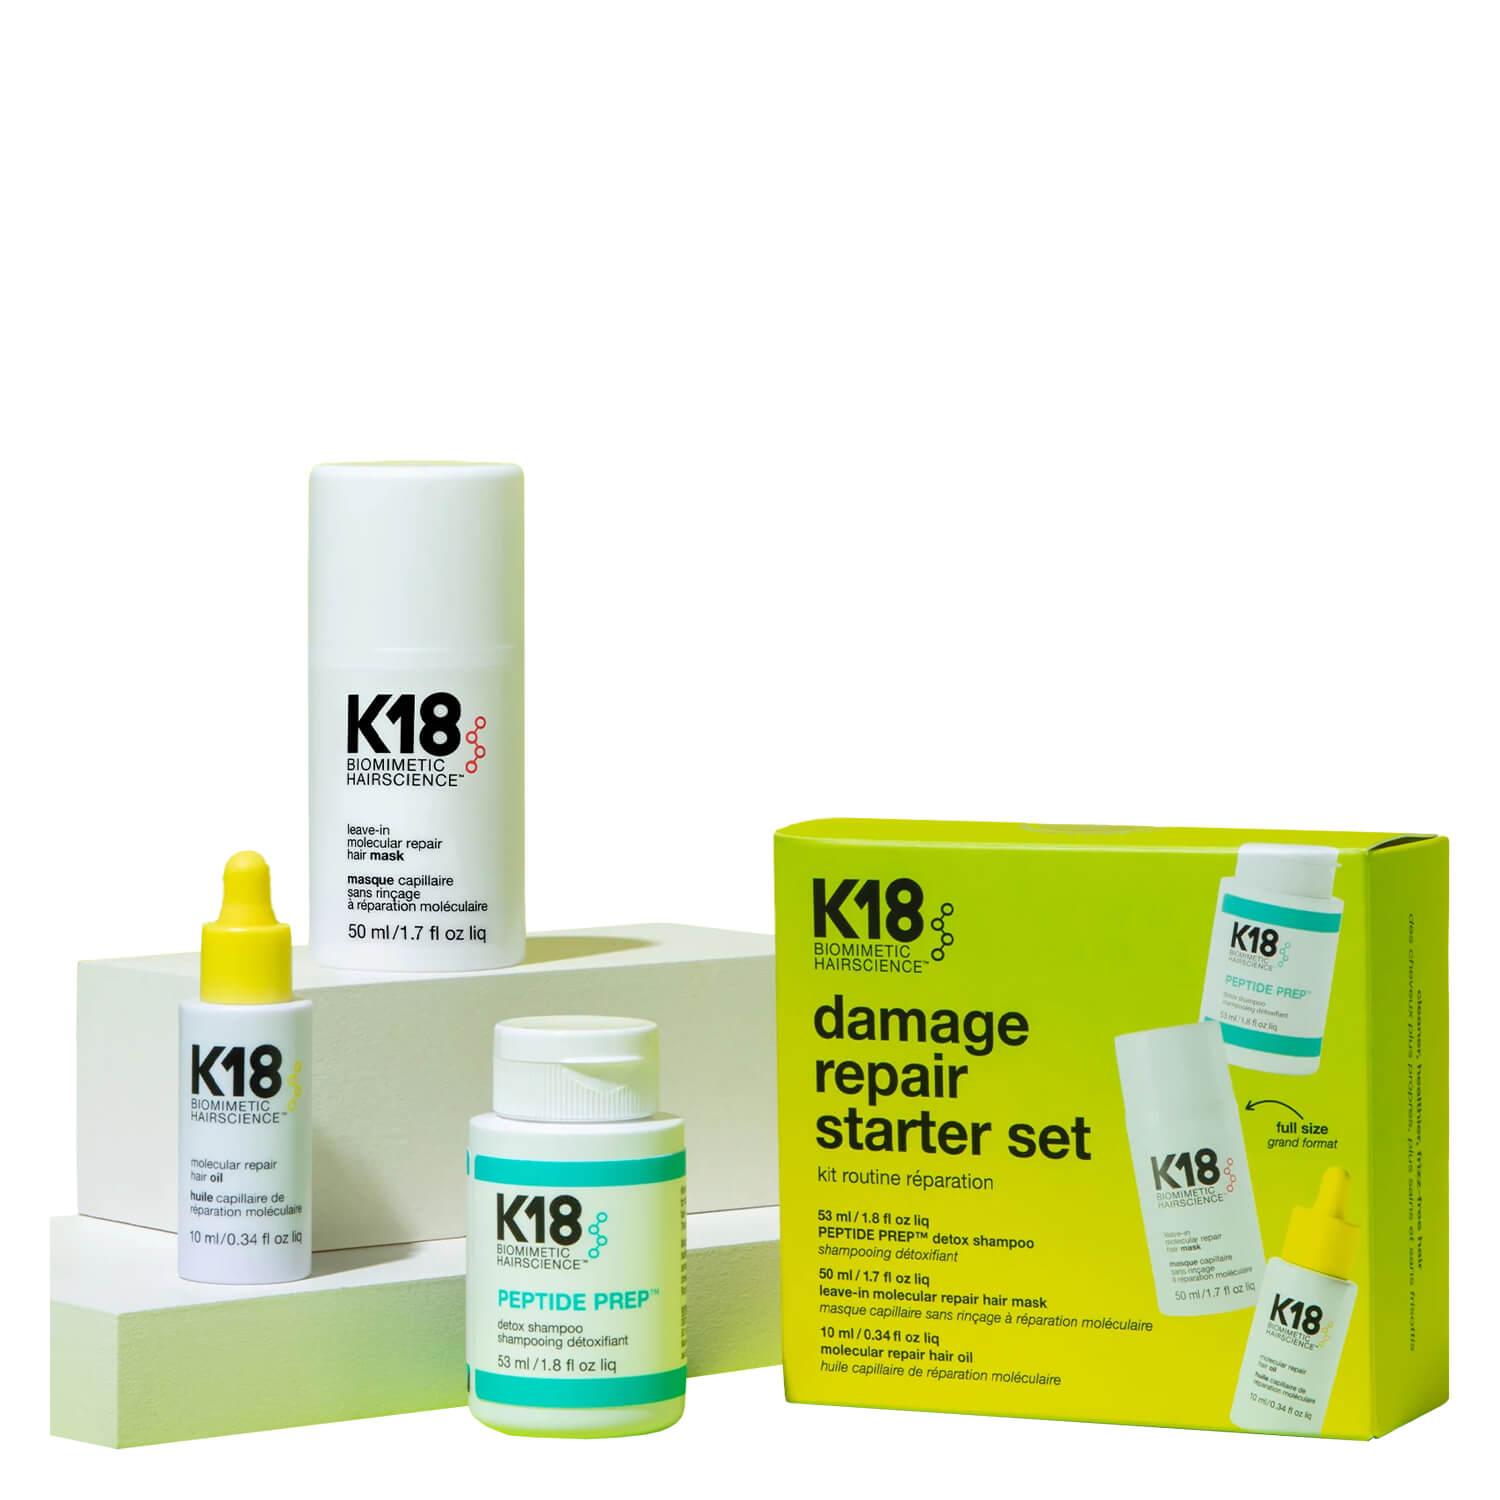 K18 Biomimetic Hairscience - damage repair starter set